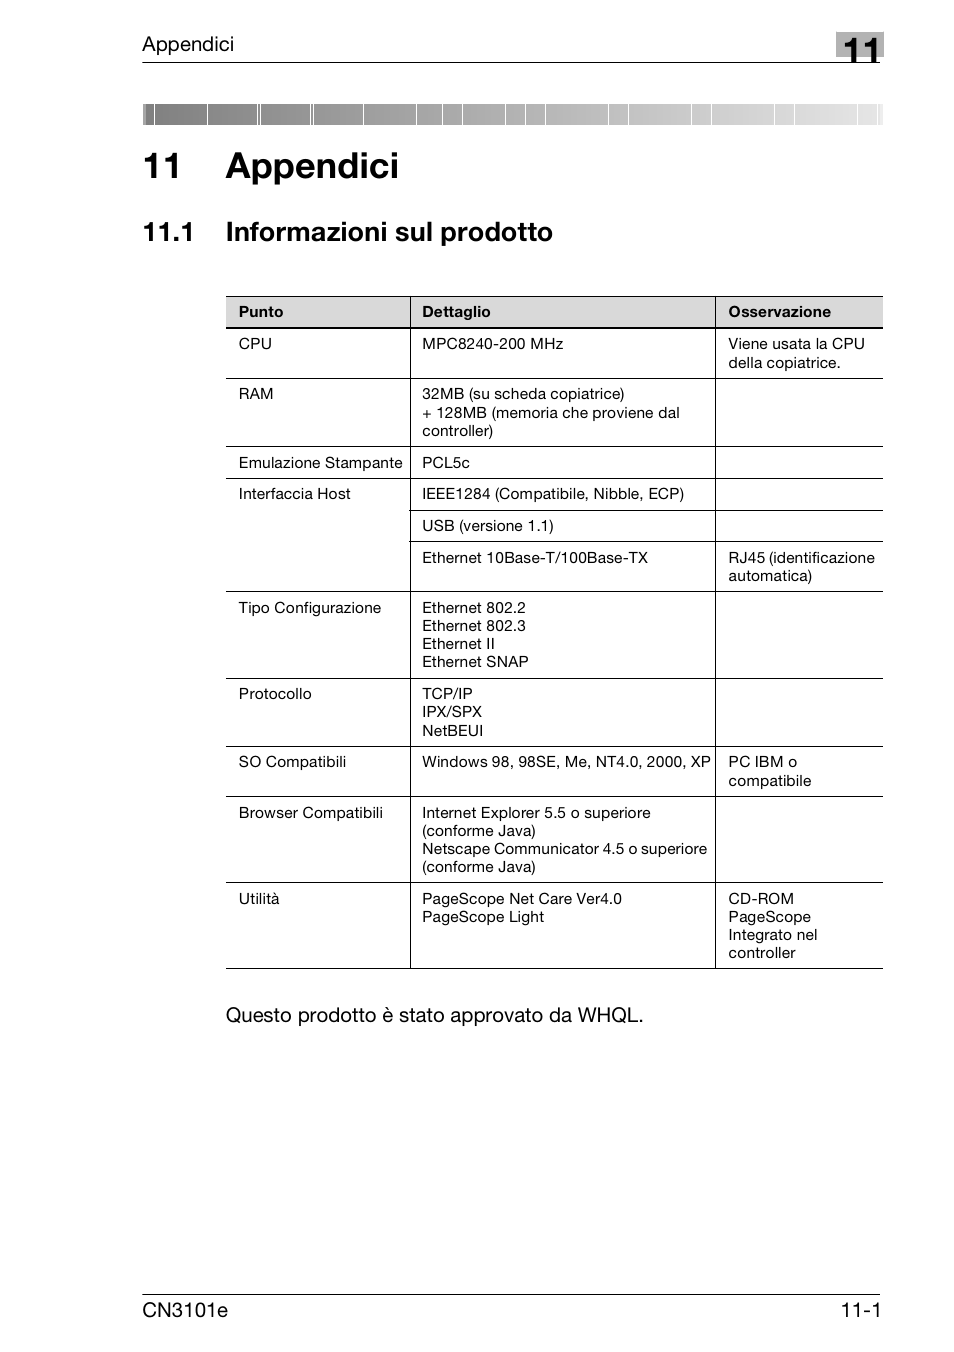 11 appendici, 1 informazioni sul prodotto, Informazioni sul prodotto -1 | Konica Minolta CN3101e Manuale d'uso | Pagina 235 / 242